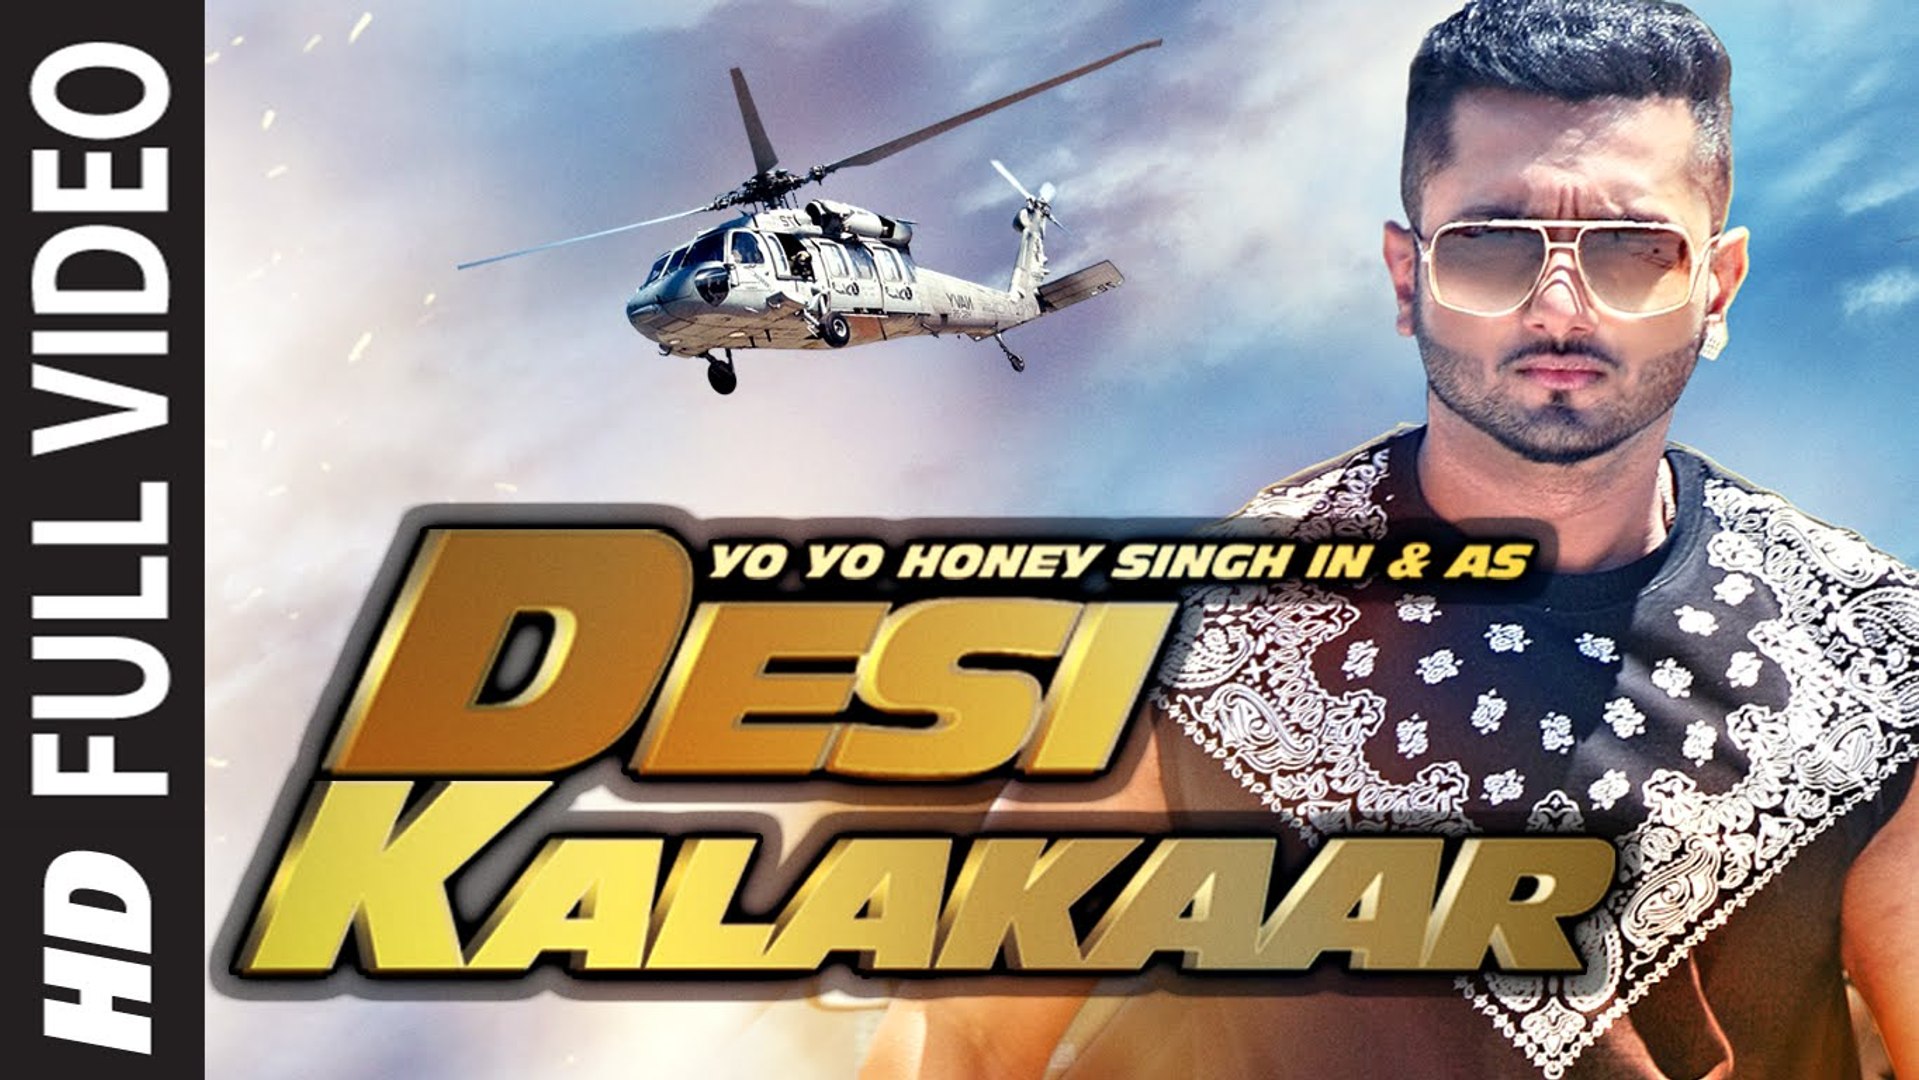 Desi Kalakaar (Full VIDEO) Yo Yo Honey Singh | New Punjabi Song 2015 HD -  video Dailymotion